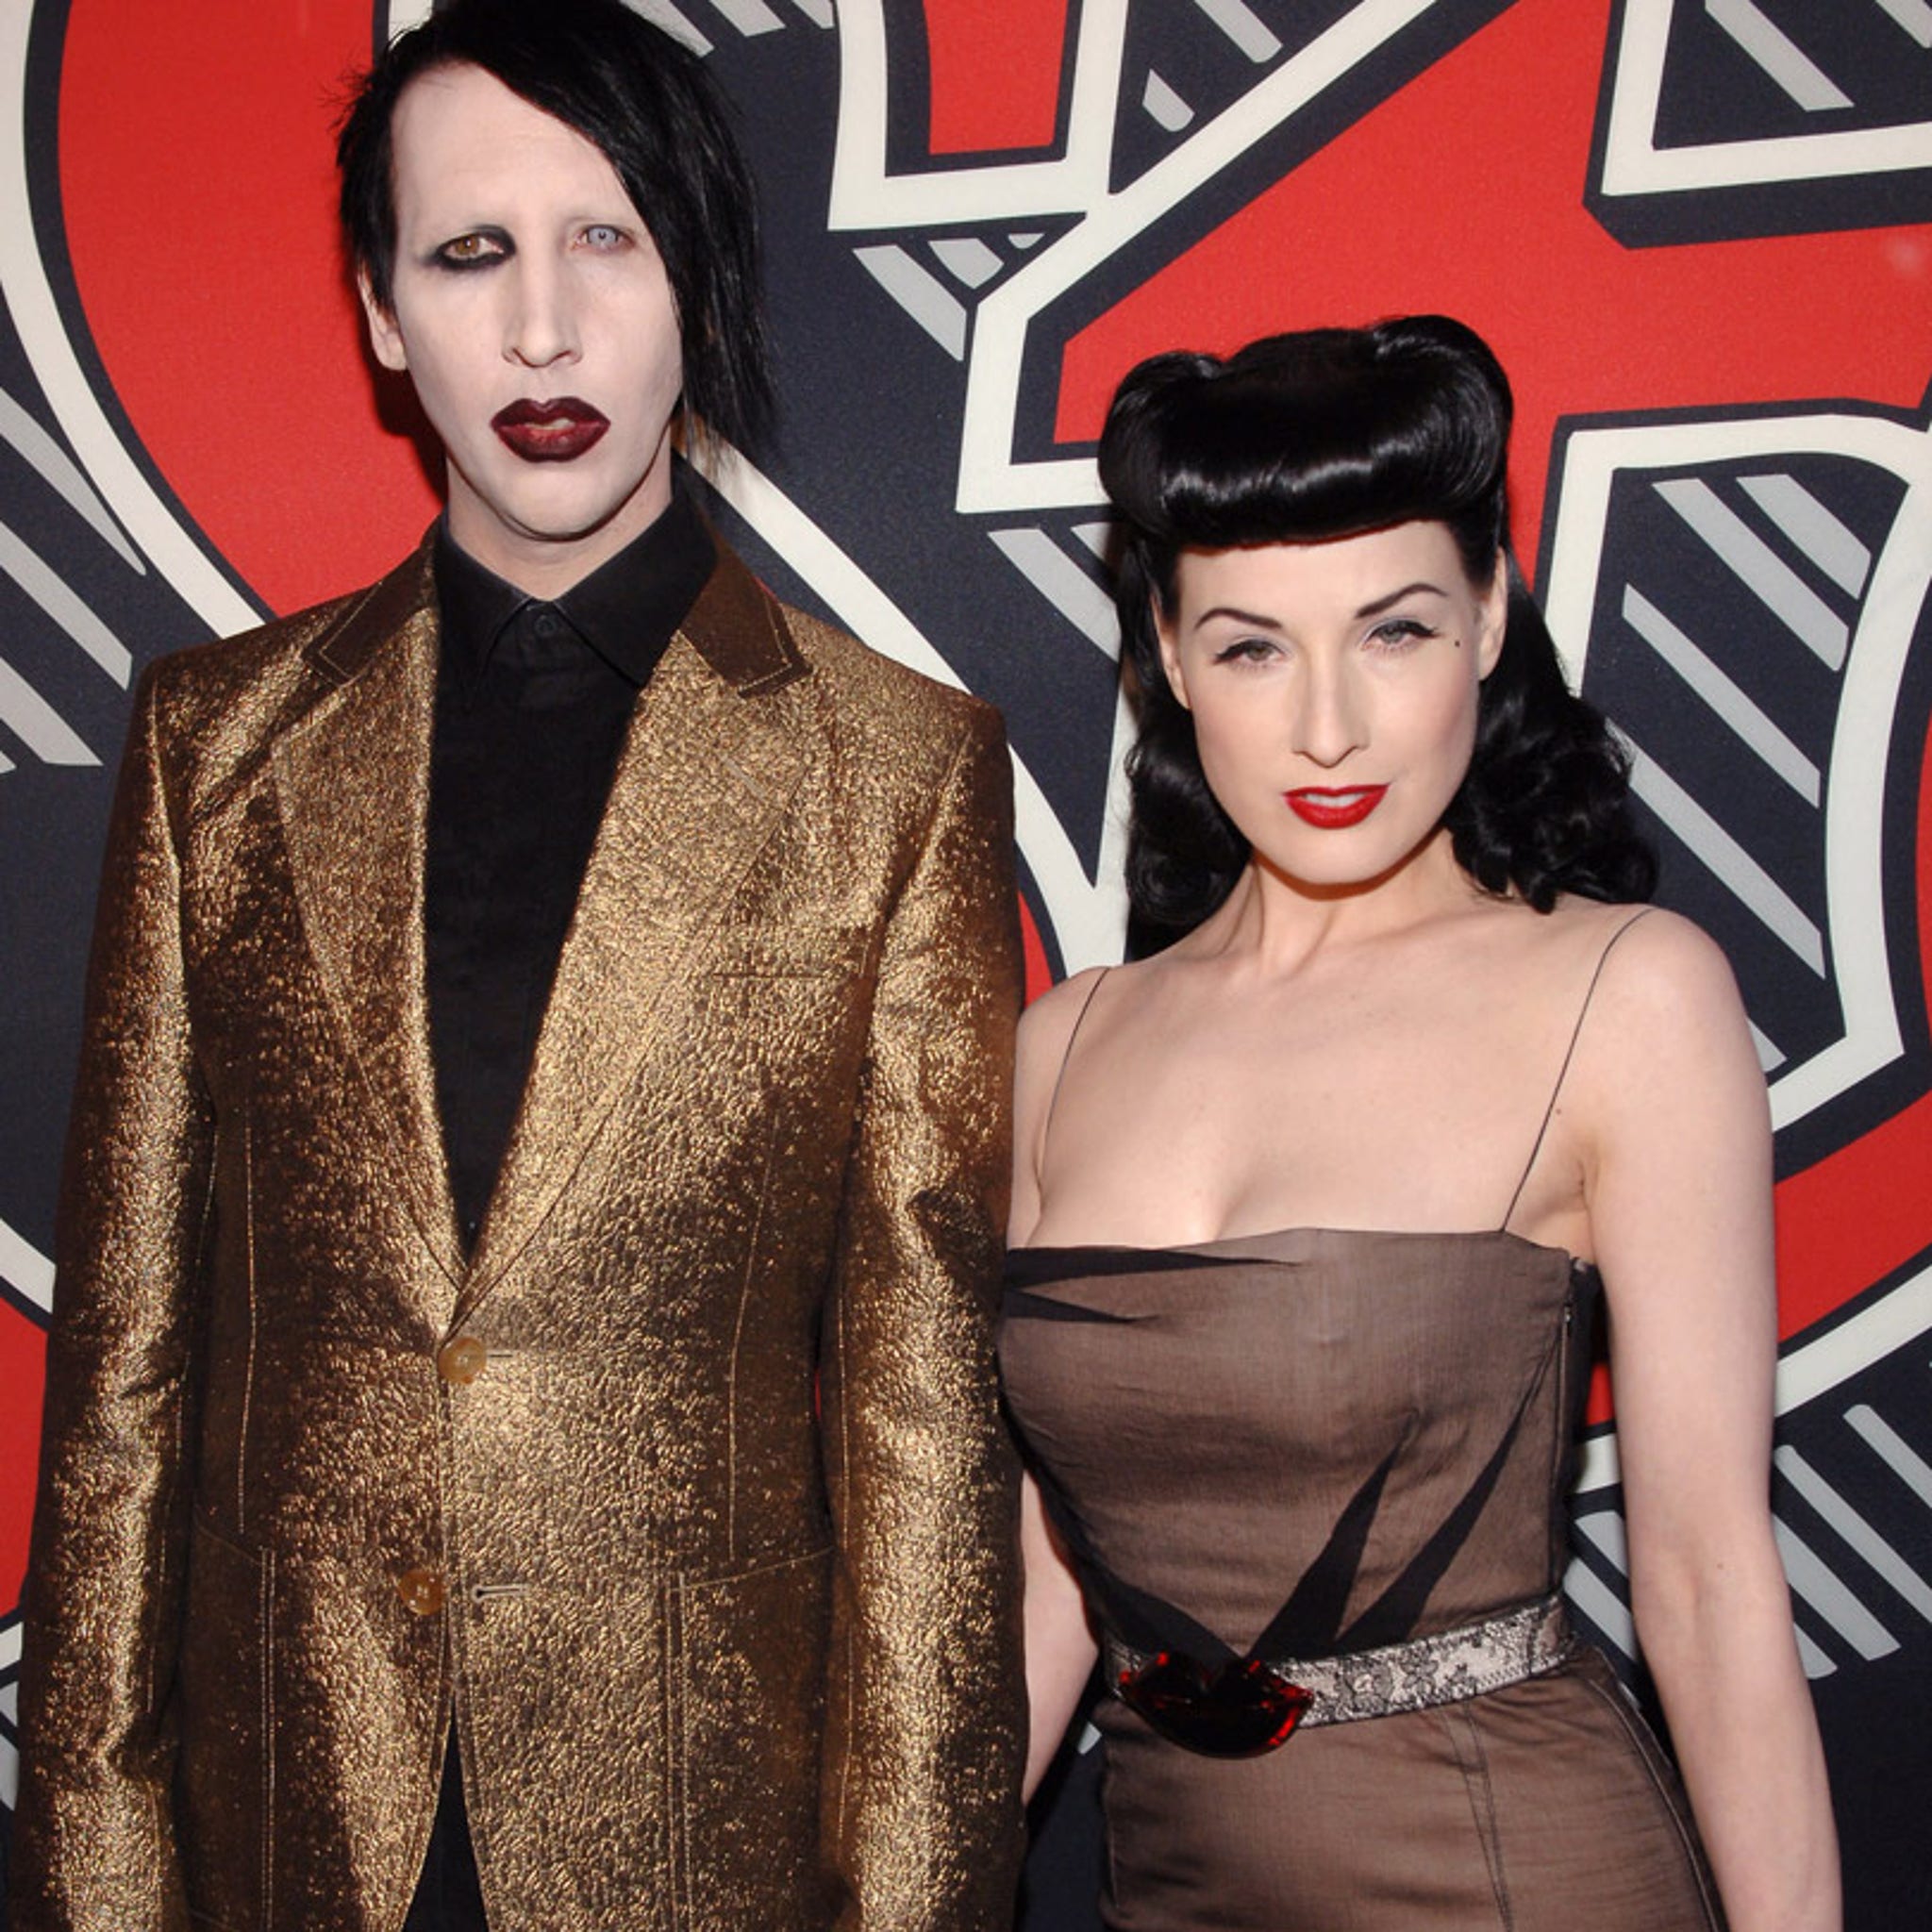 Ekspert Enrich Seaport Dita Von Teese Reveals Why Her Marriage to Marilyn Manson Didn't Work